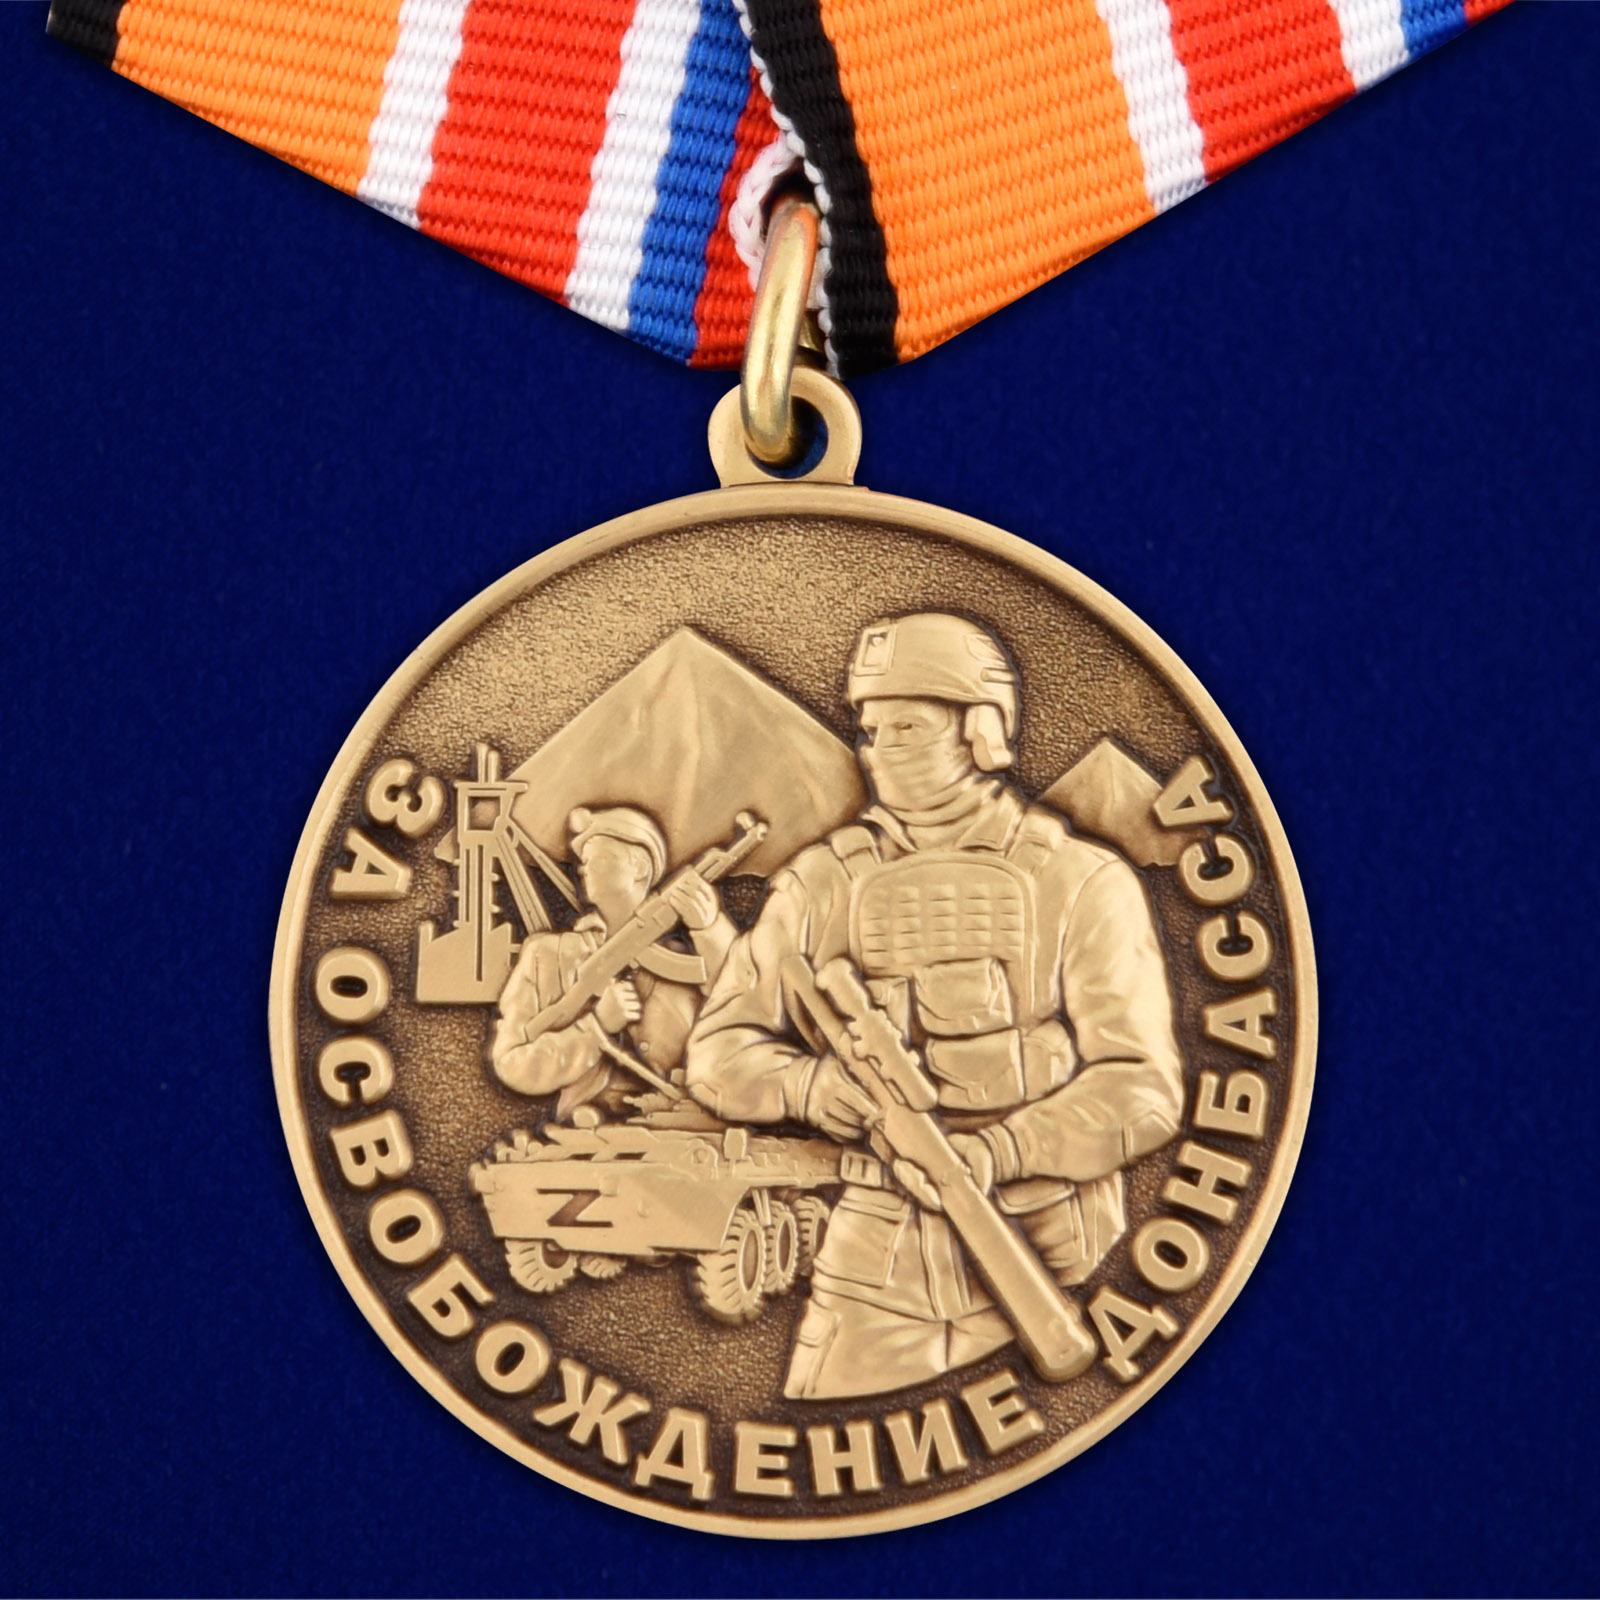 Купить медаль Z За освобождение Донбасса онлайн